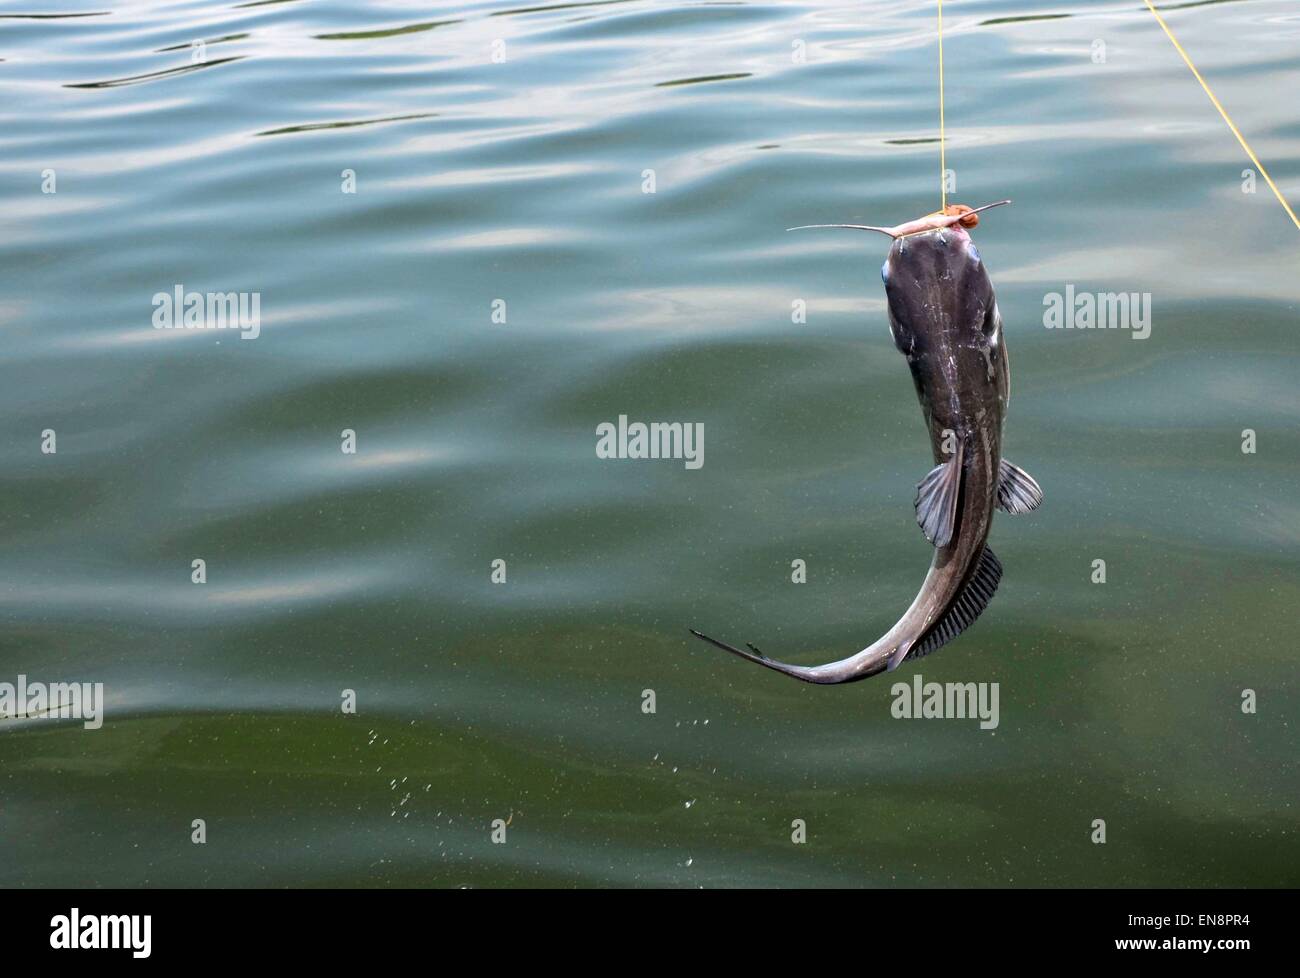 Wild freshwater catfish on fishing line Stock Photo - Alamy